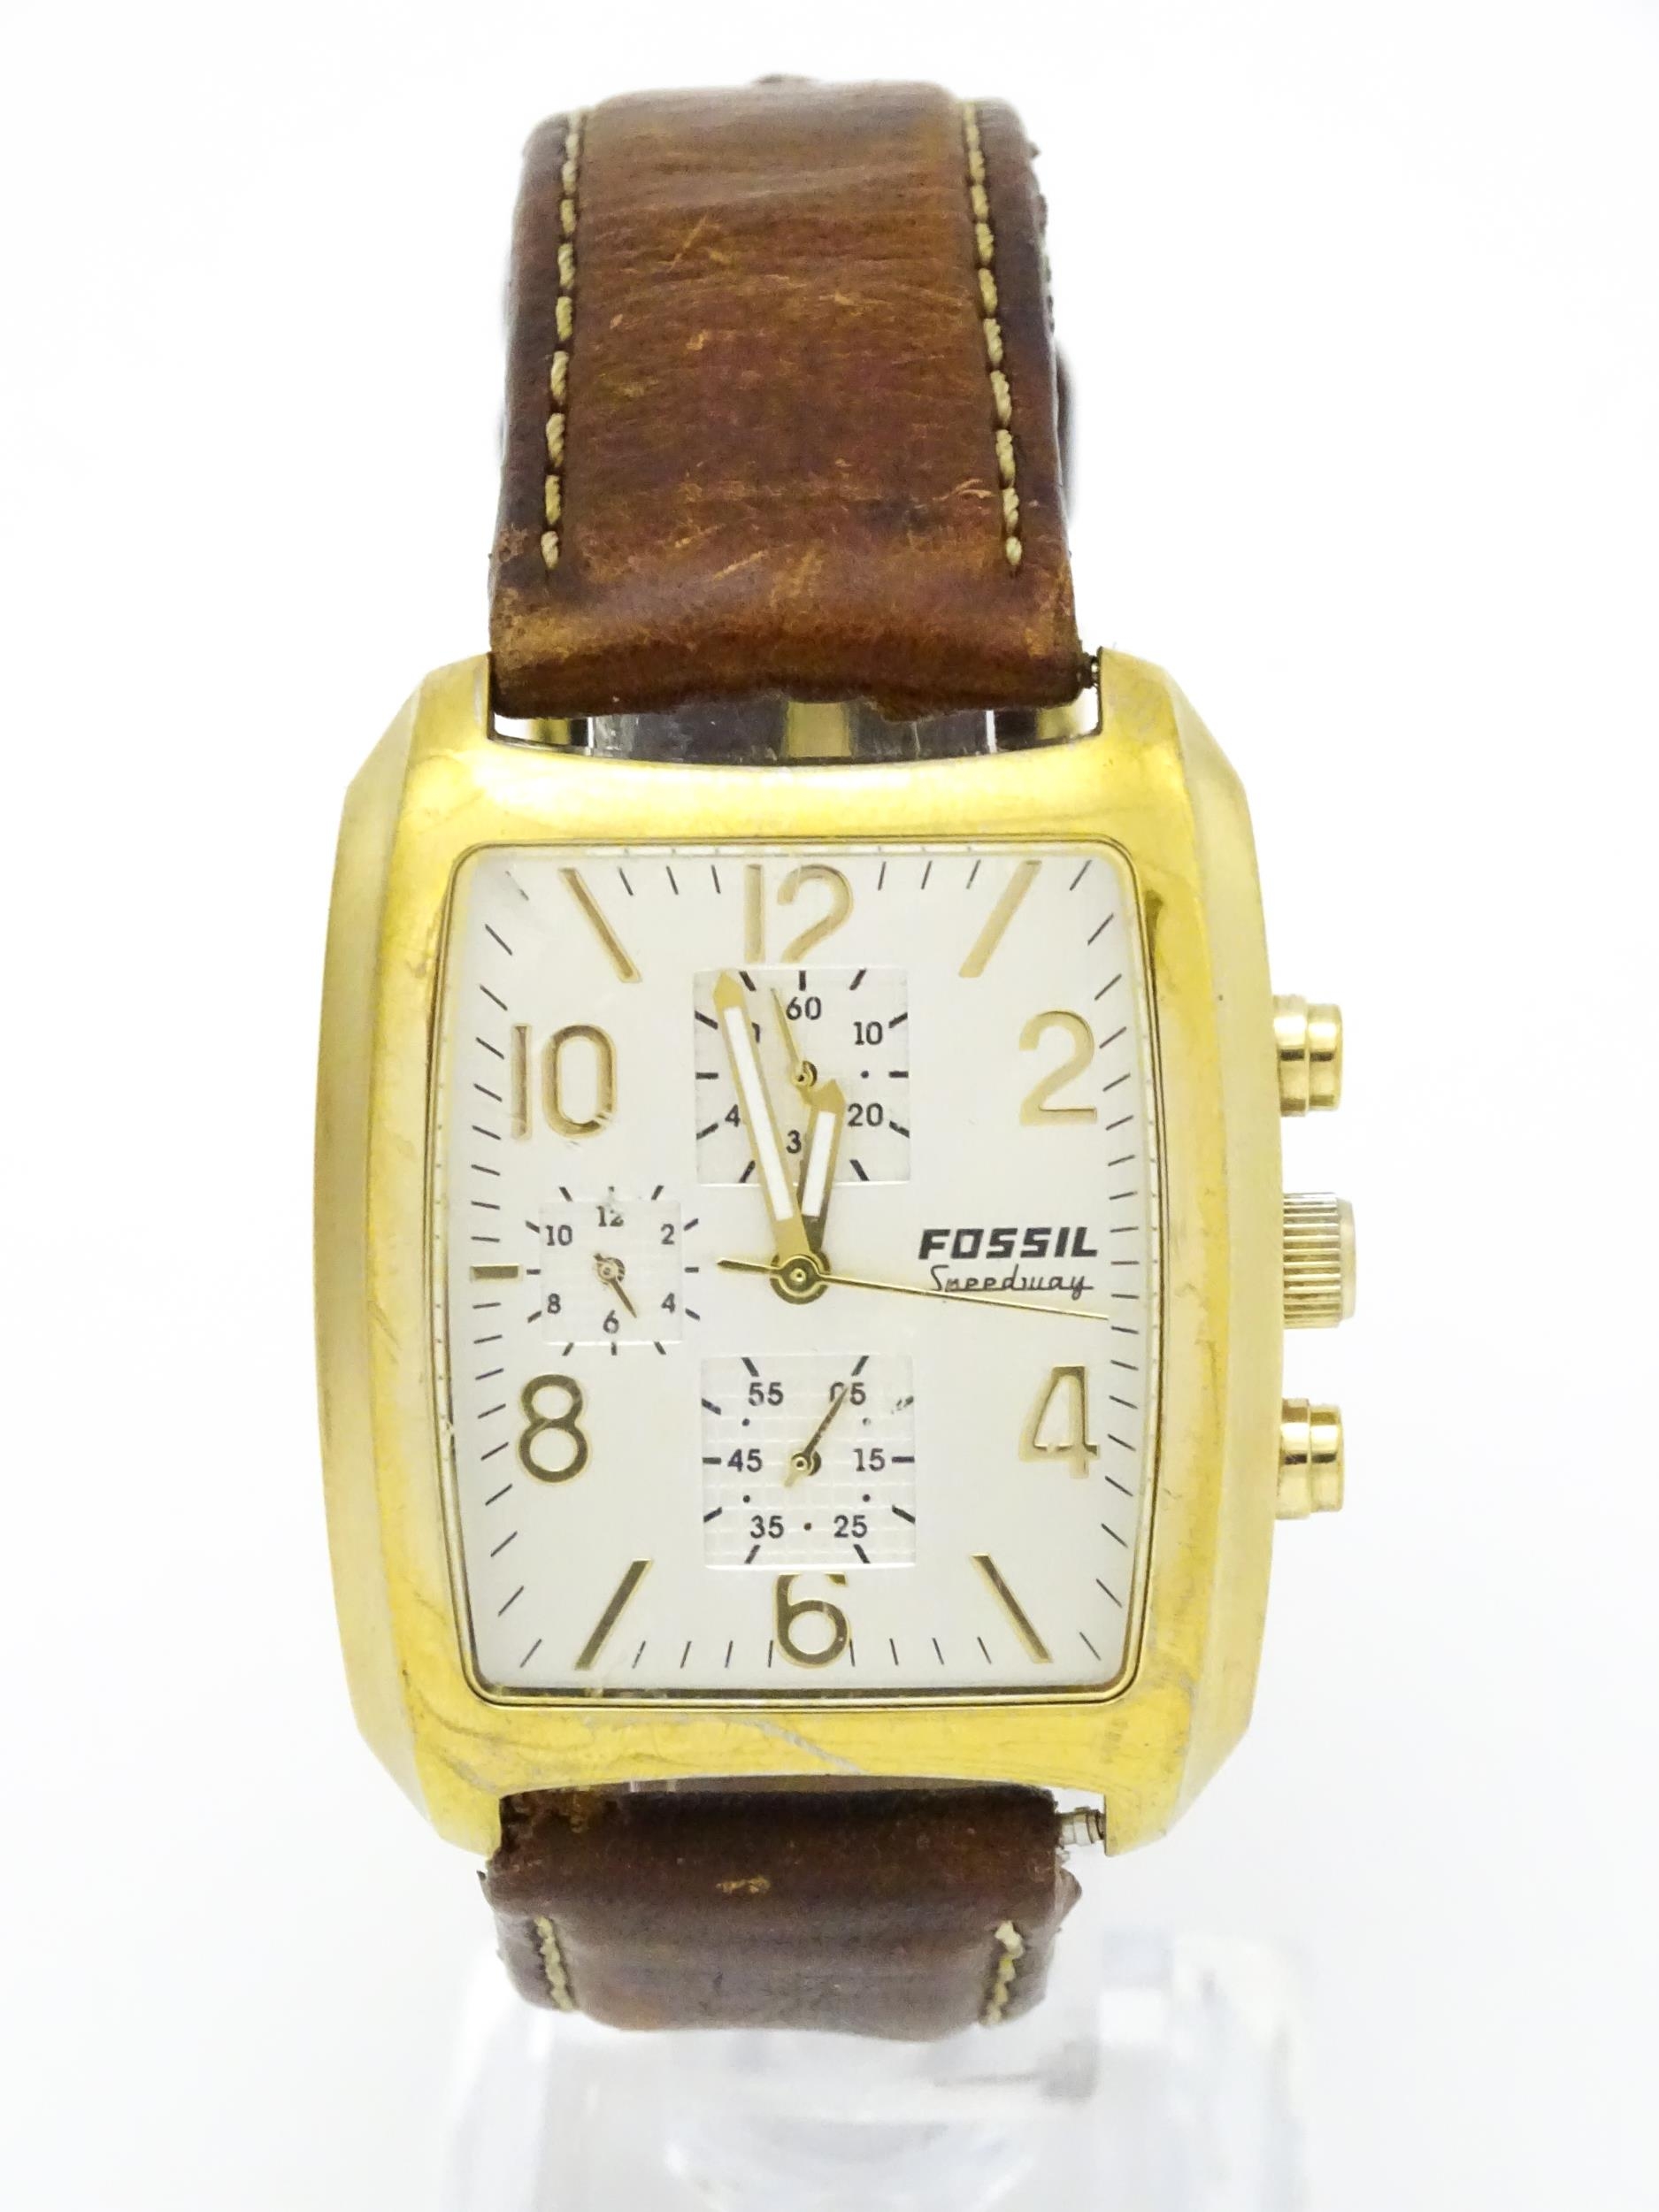 A Fossil Speedway Arkitekt gentlemans wristwatch. The watch case approx 1 3/8" wide Please Note - we